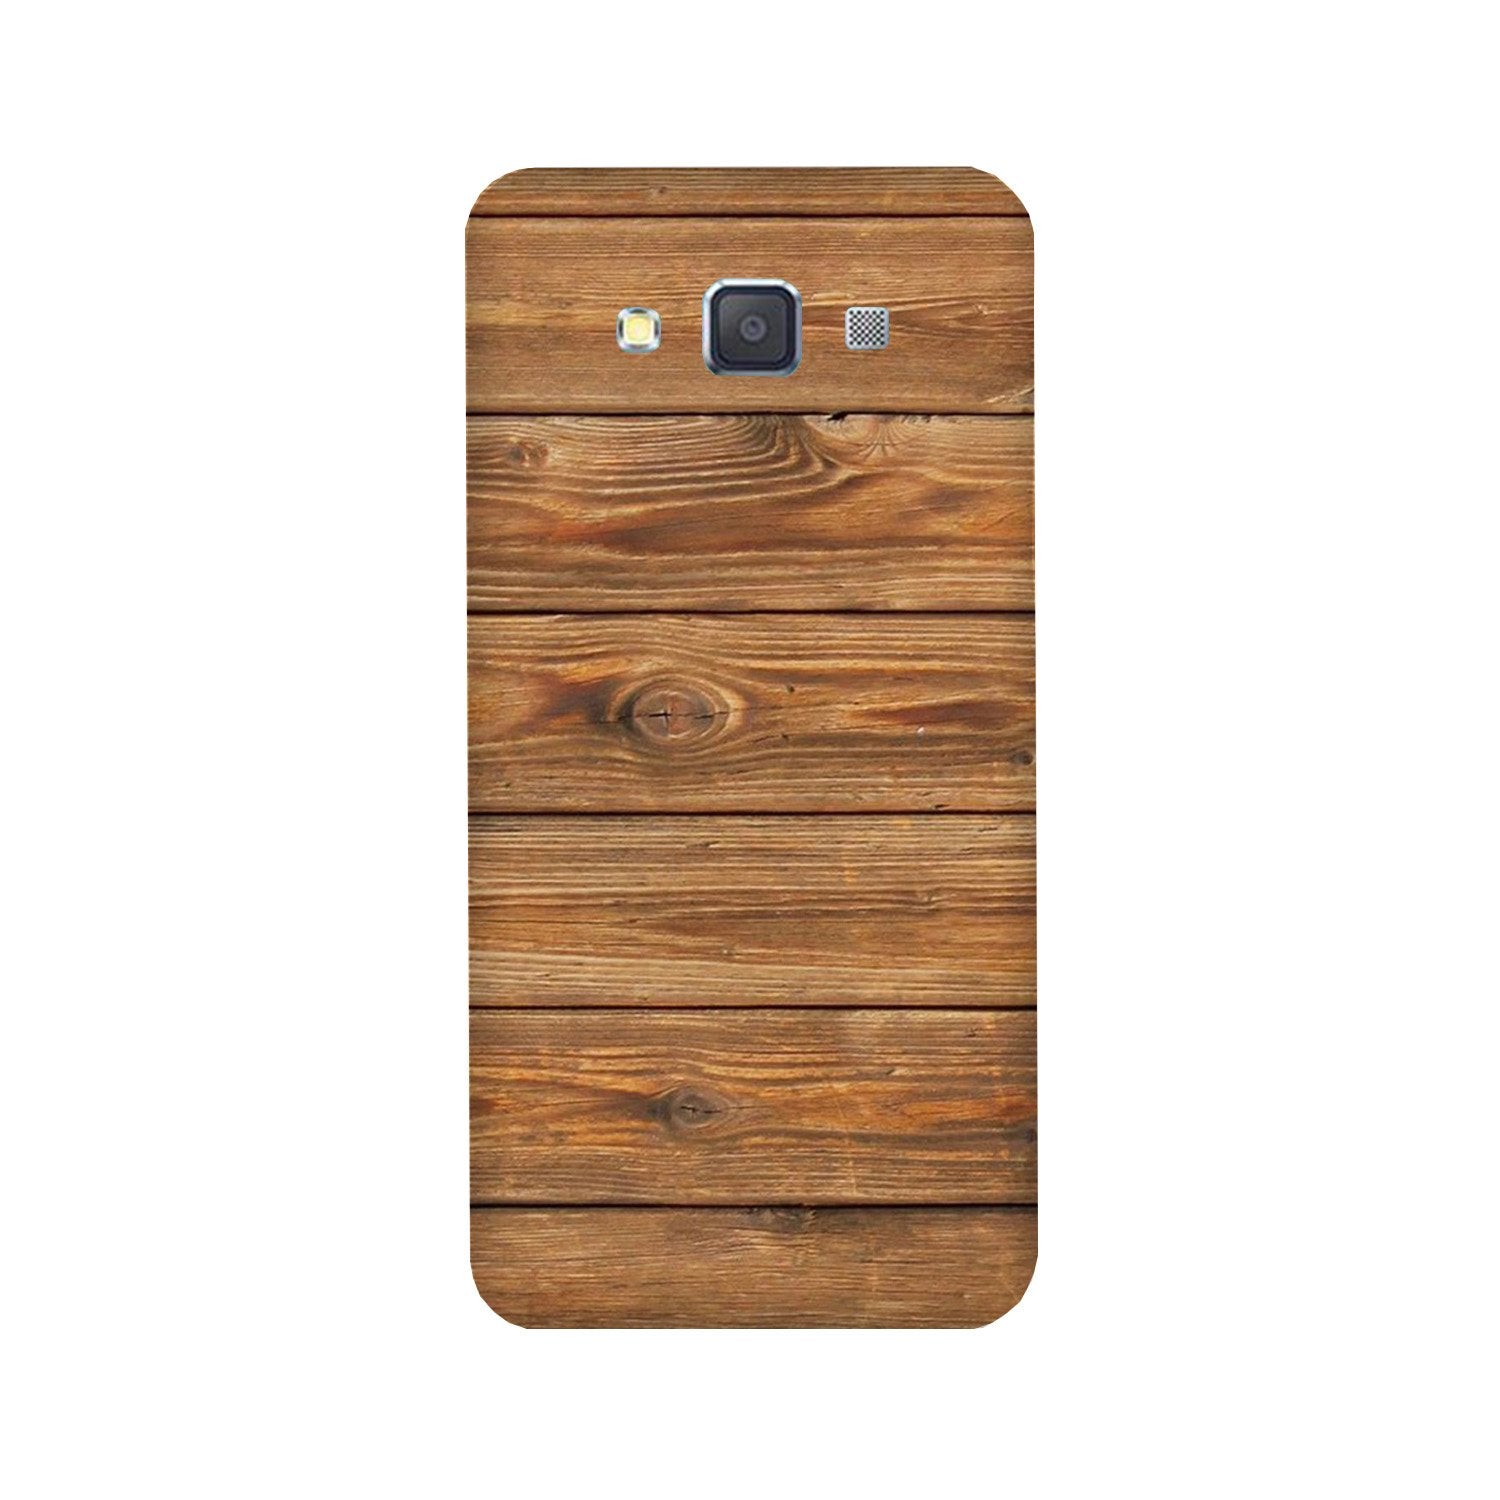 Wooden Look Case for Galaxy E7(Design - 113)